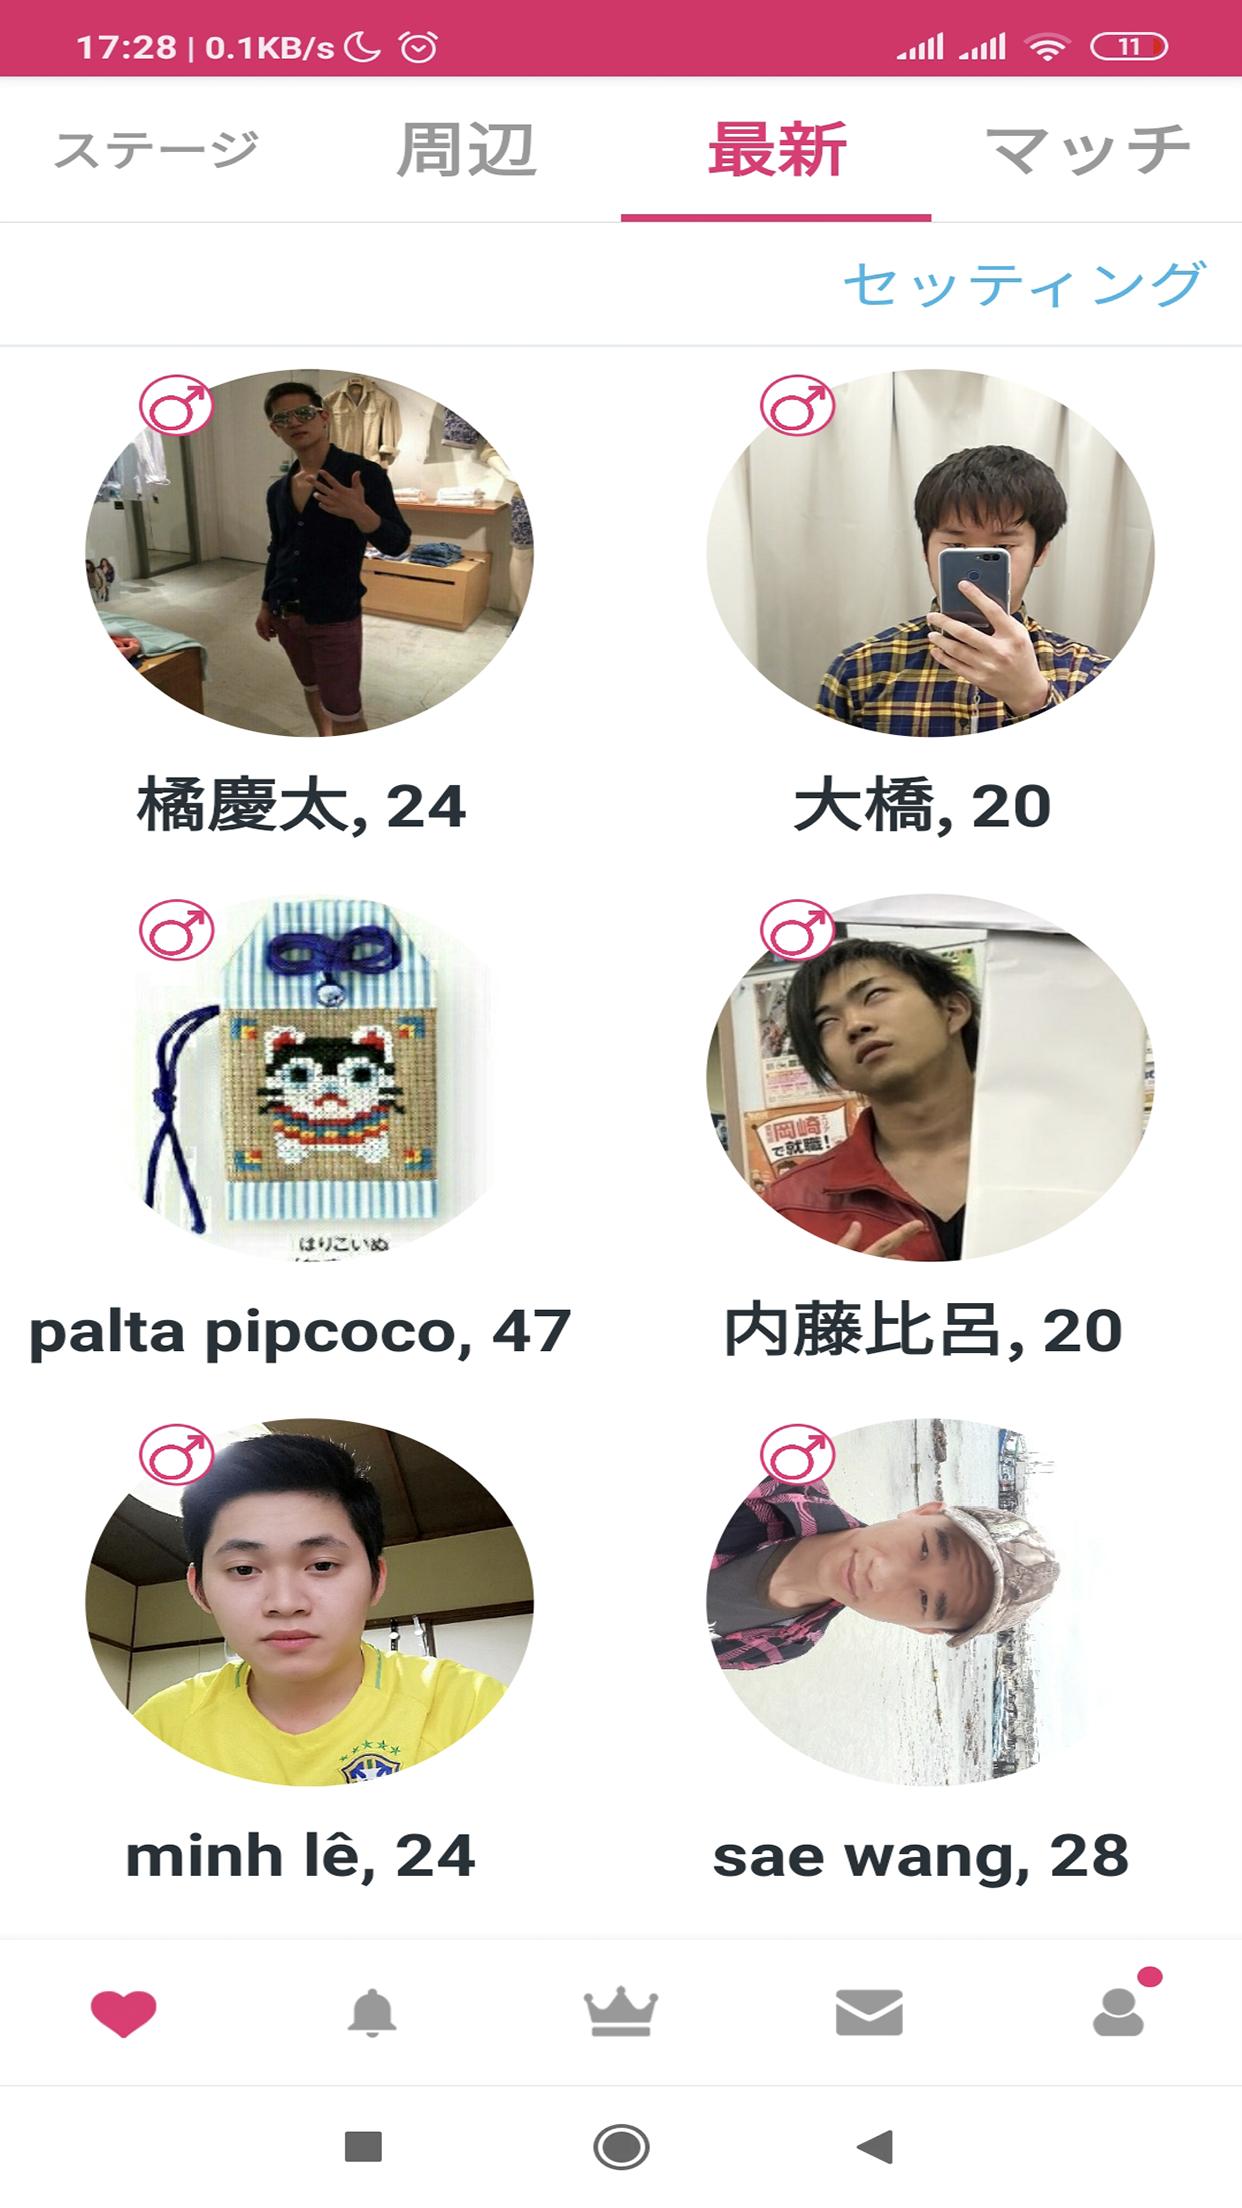 Android용 ワンチャン - 日本人のシングルのための近くの出会い系アプリ - APK 다운로드